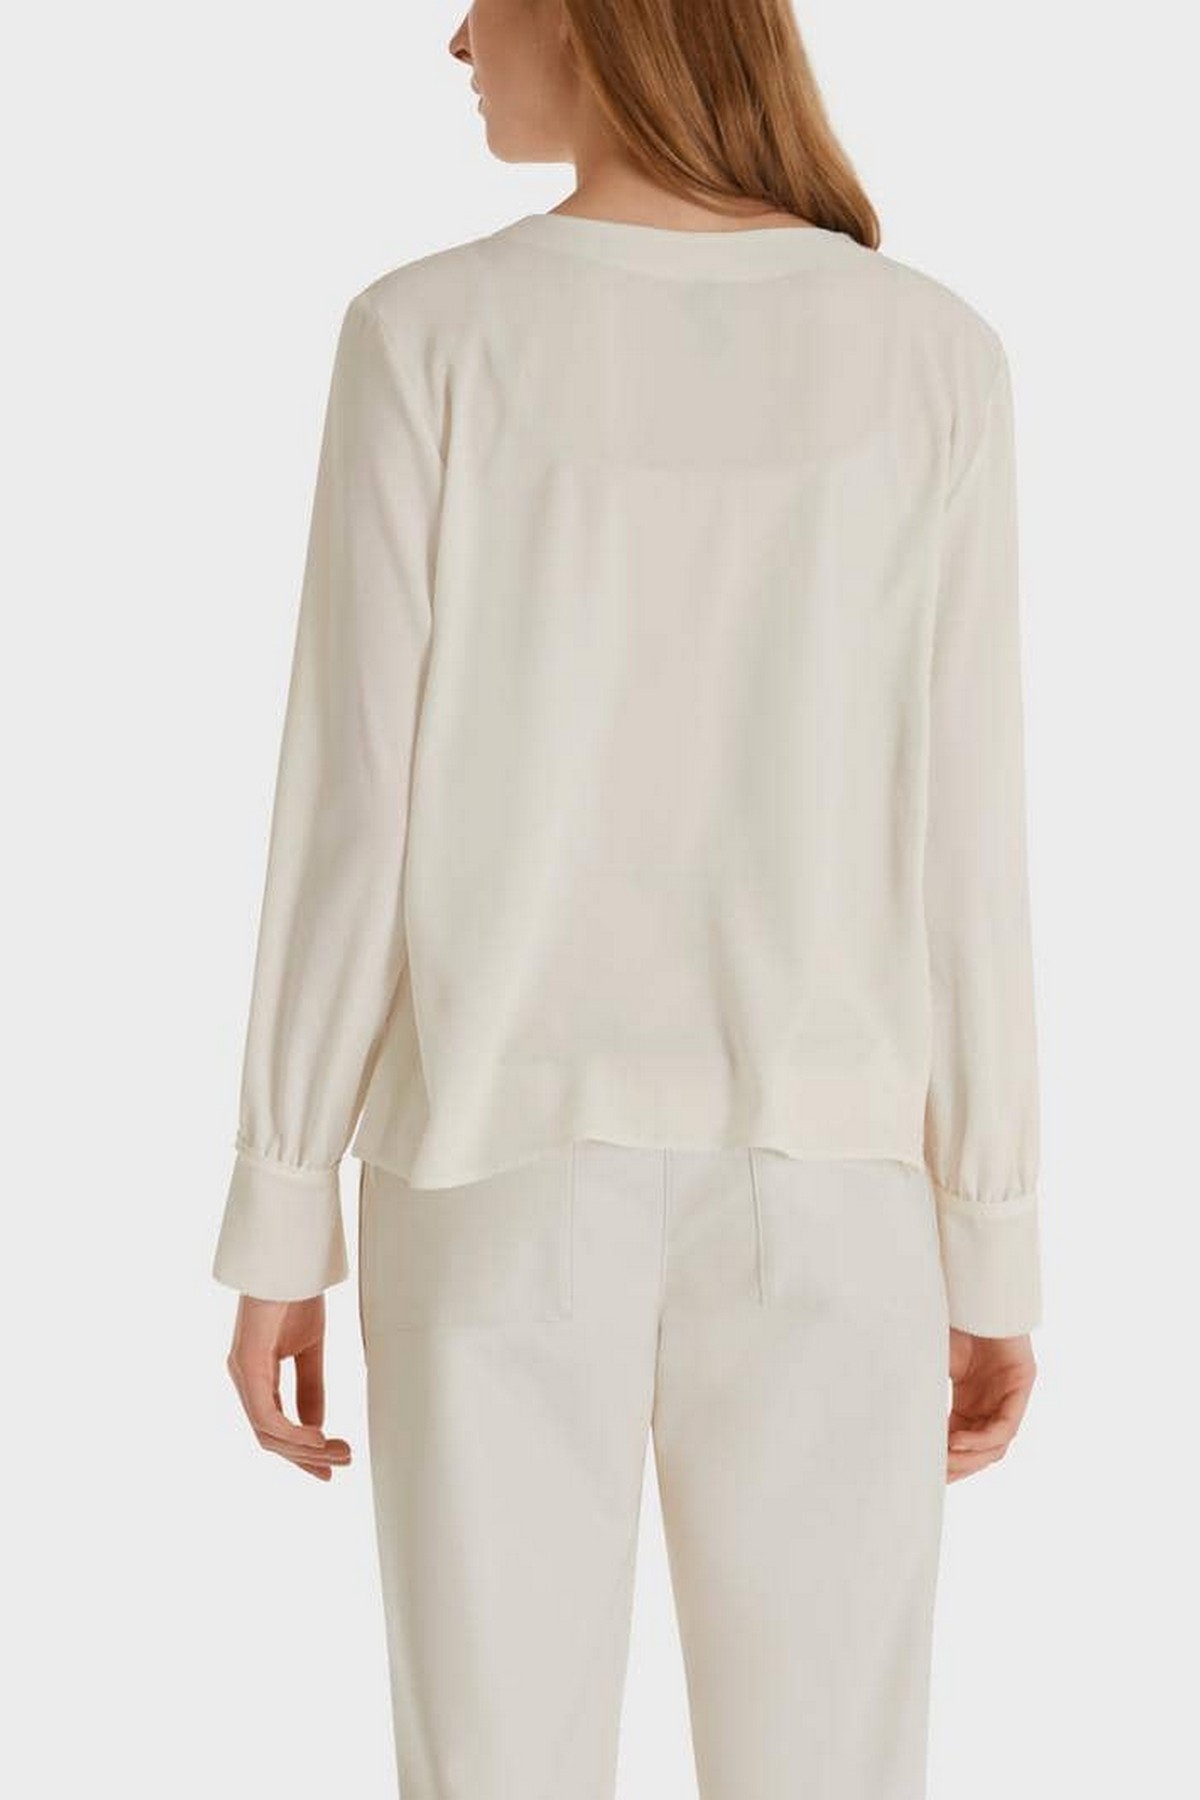 Marc Cain - SC 55.04 W01 110 - Shirtbloes plissé off-white